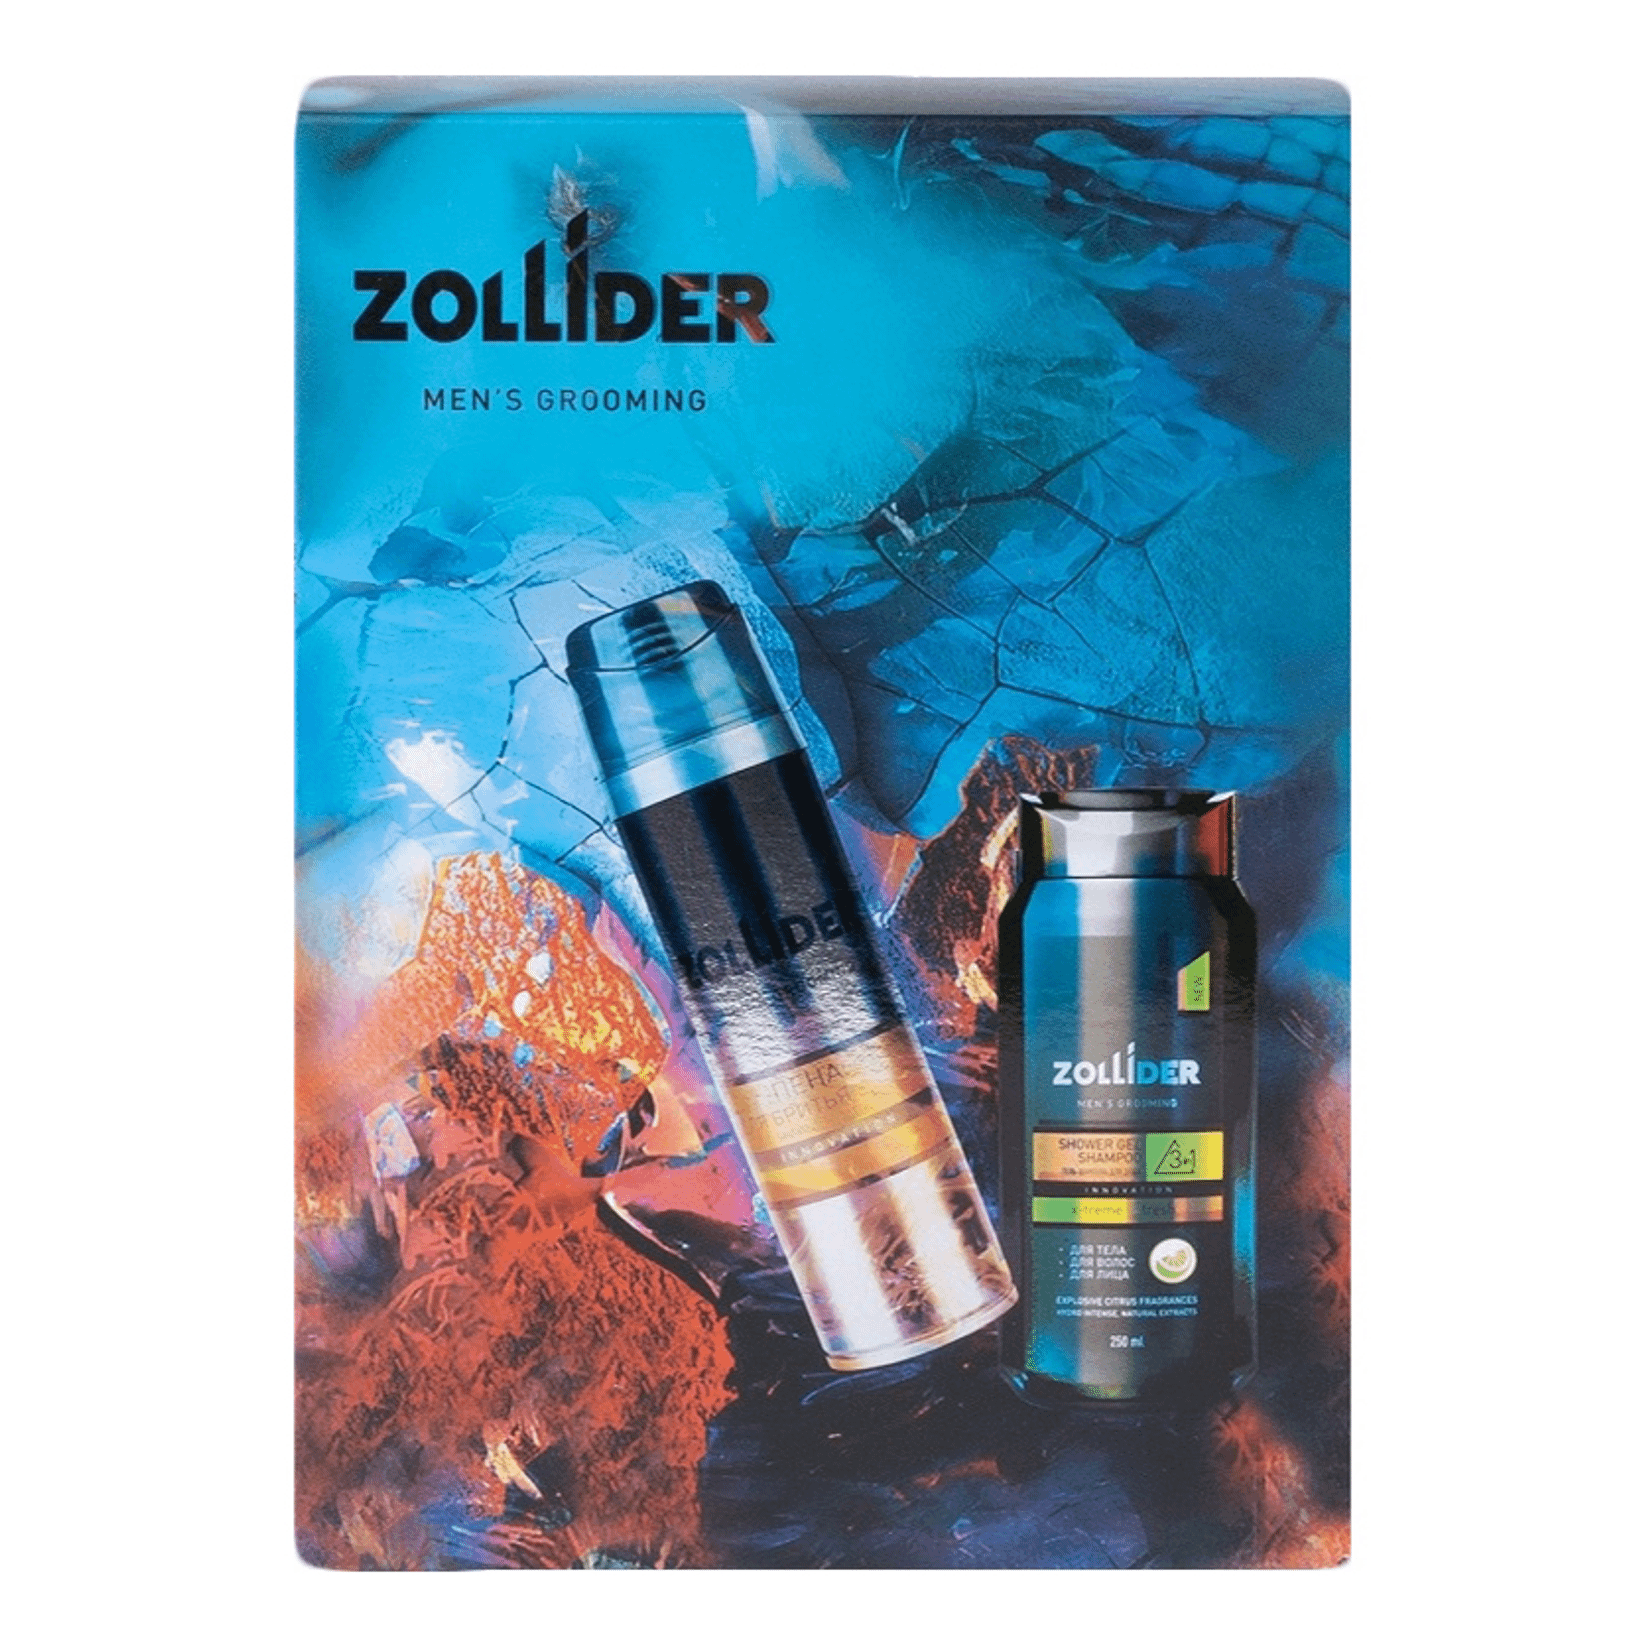 Набор косметики для тела Zollider 2 предмета в ассортименте (модель по наличию)